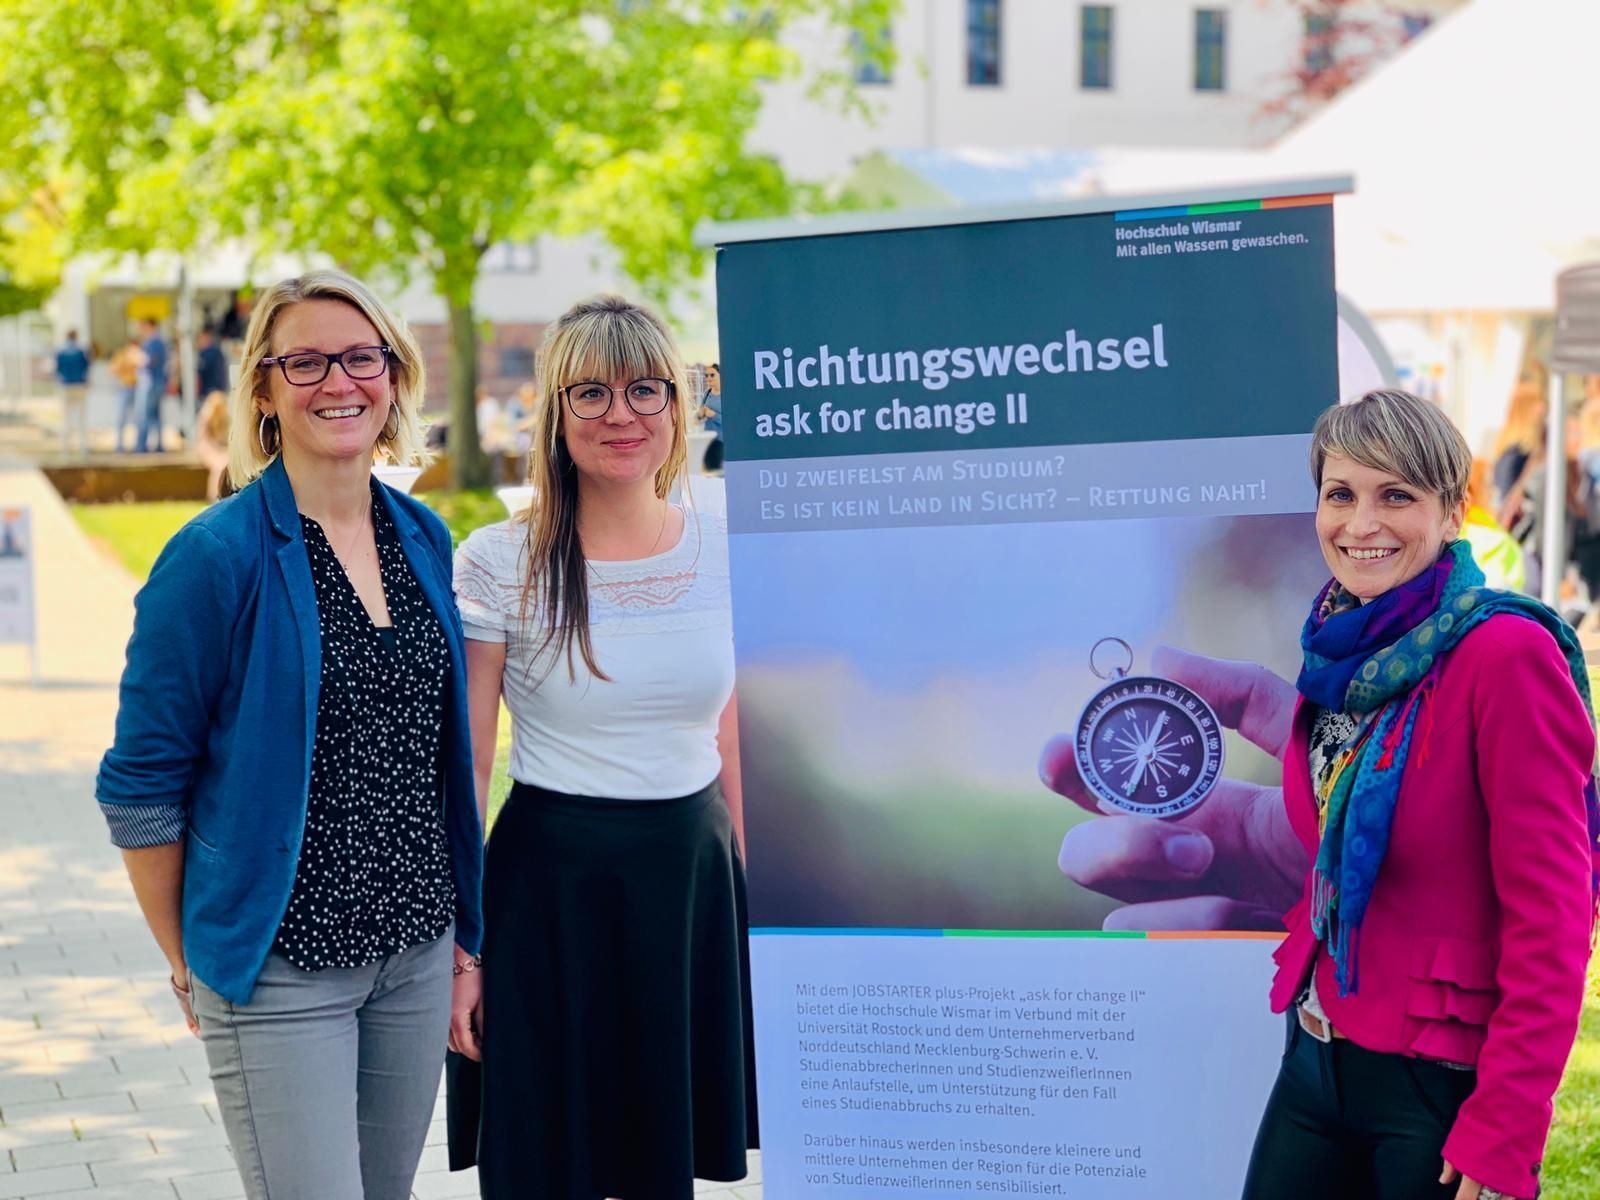 Firmenkontaktbörse auf dem Campus der Hochschule Wismar richtet Beratungsinsel für Studienzweifler ein